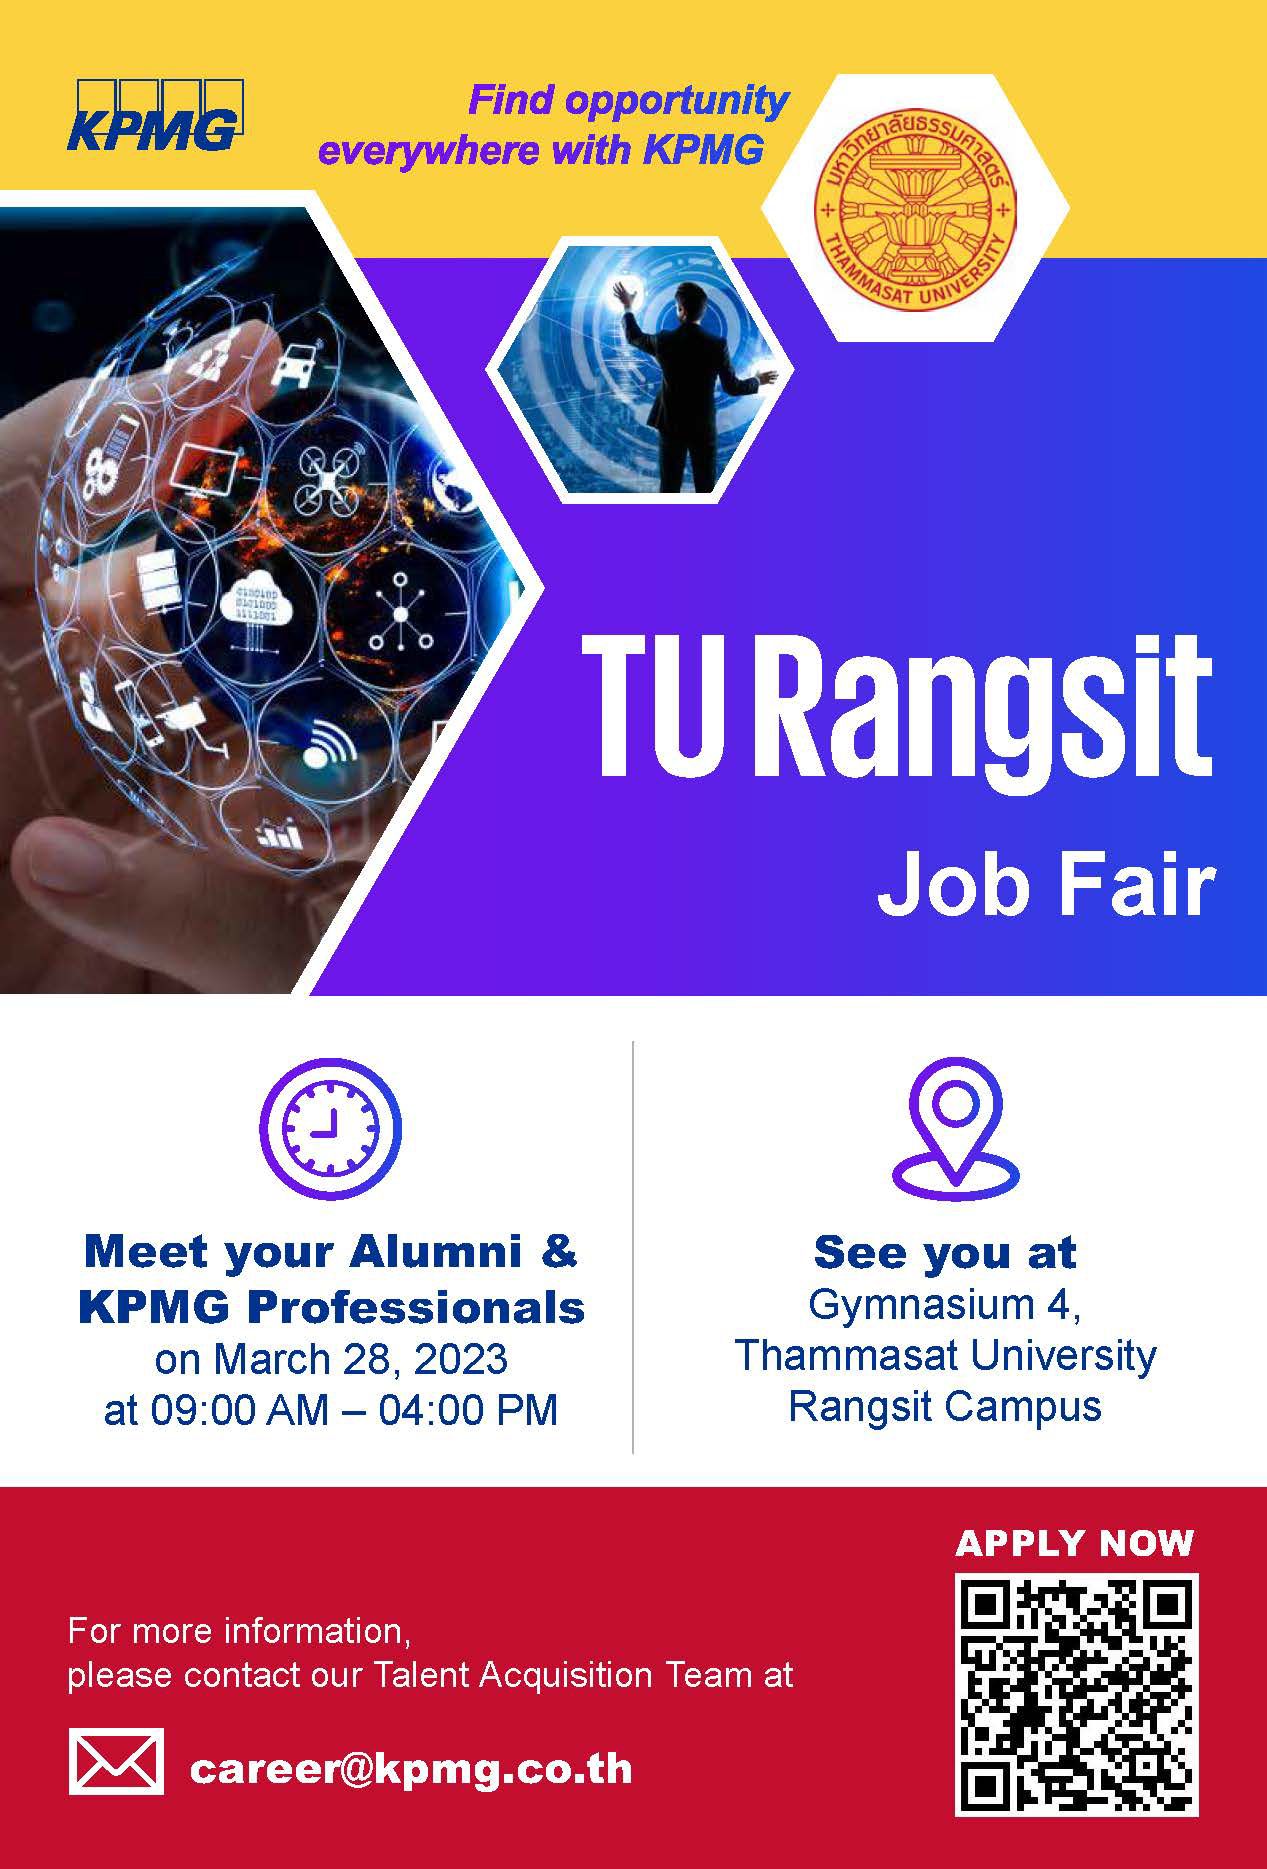 TU Tangsit Job Fair 2023